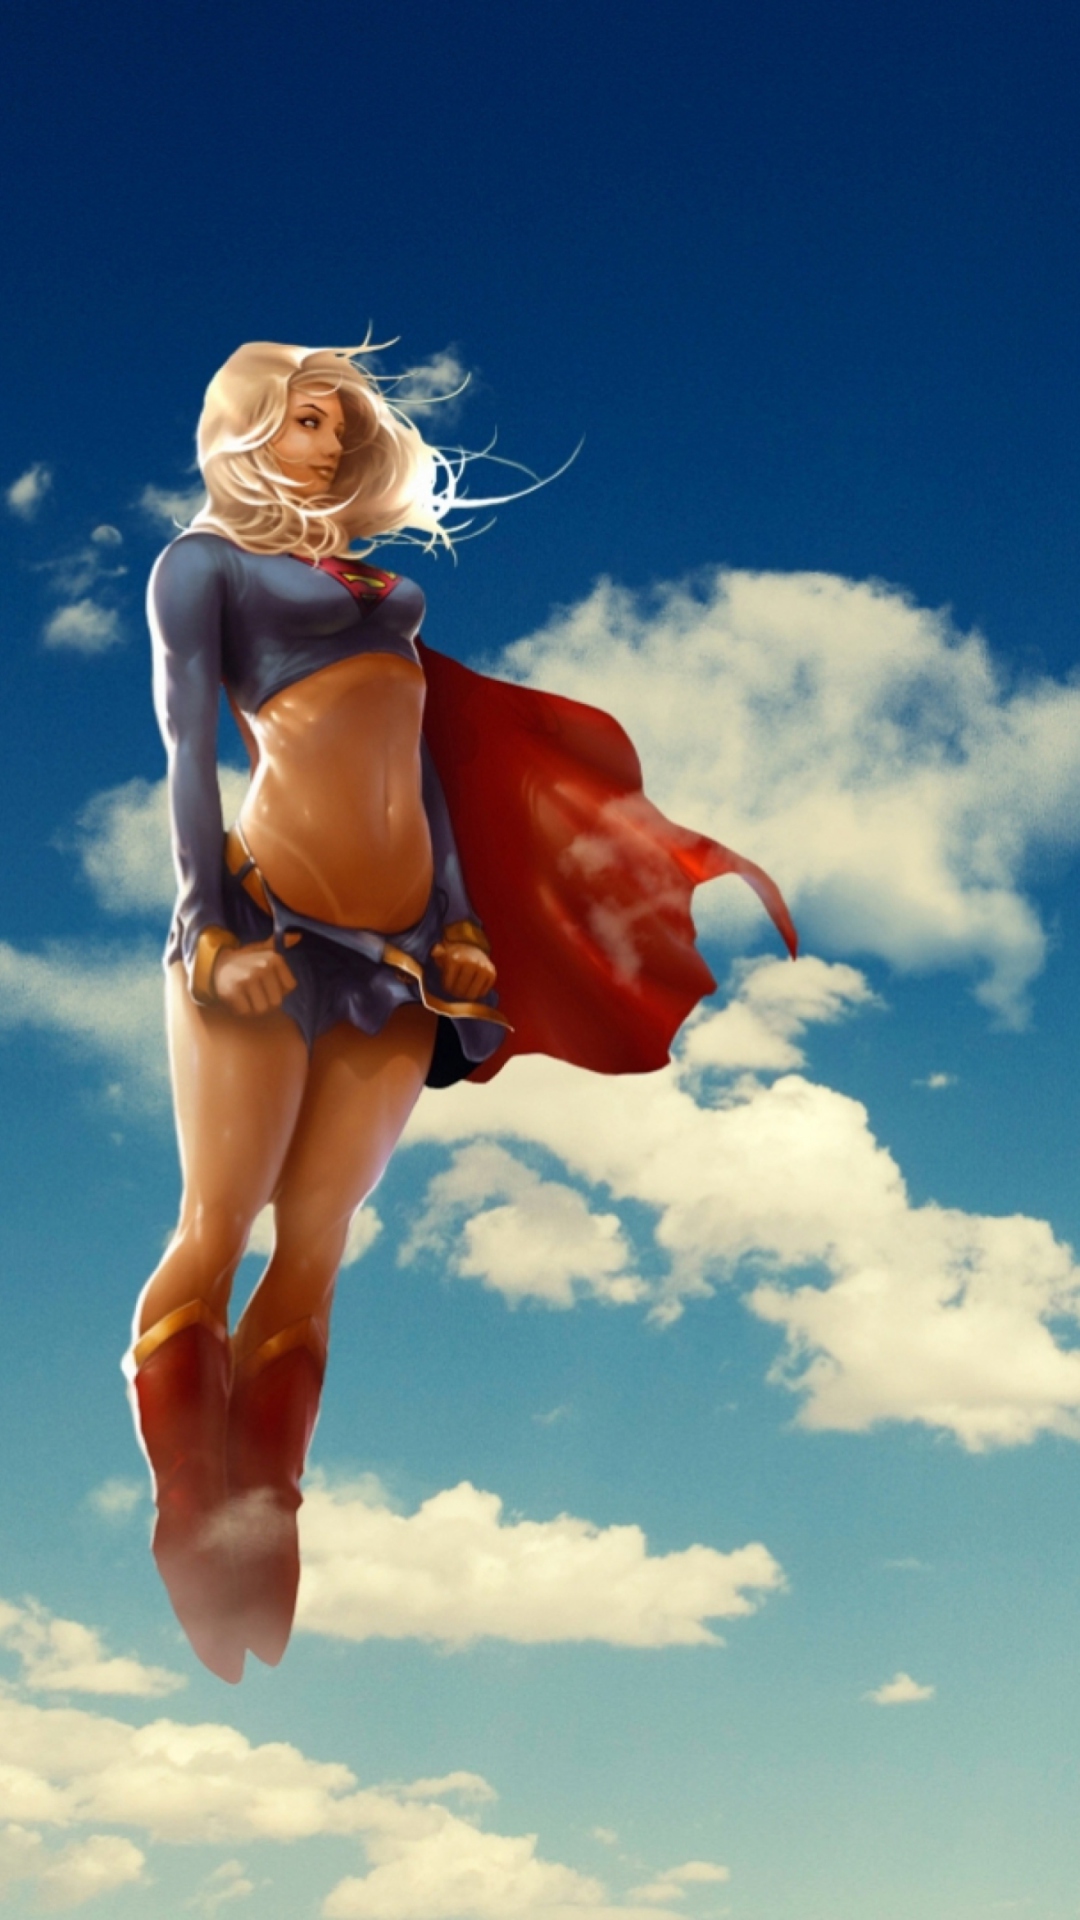 Super Woman wallpaper 1080x1920